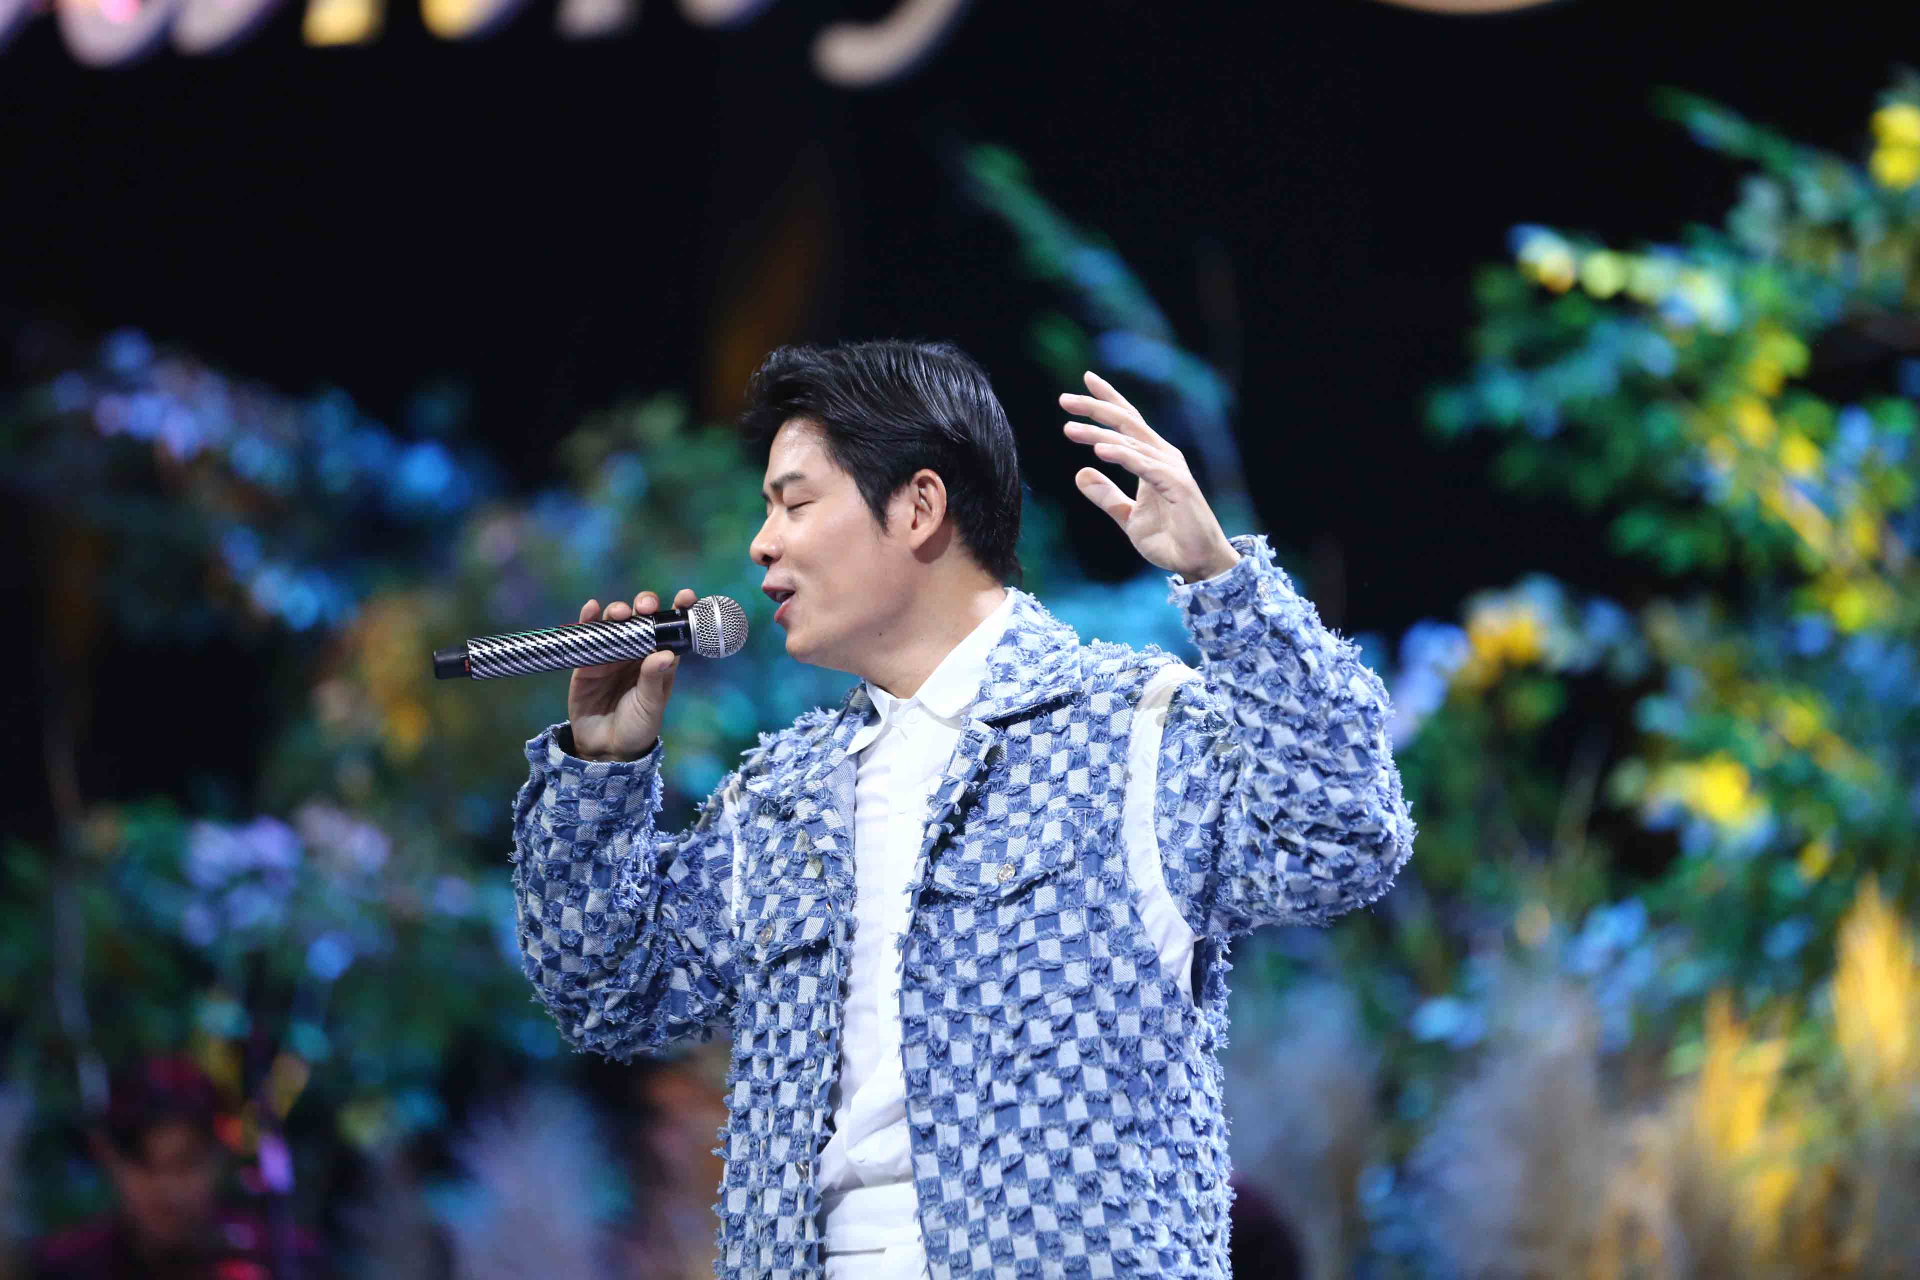 Lần đầu tiên thể hiện ca khúc “Chiếc khăn gió ấm” – một bản hit do chính mình sáng tác, Nguyễn Văn Chung đã mang đến cho khán giả một trải nghiệm vô cùng mới mẻ, thú vị.